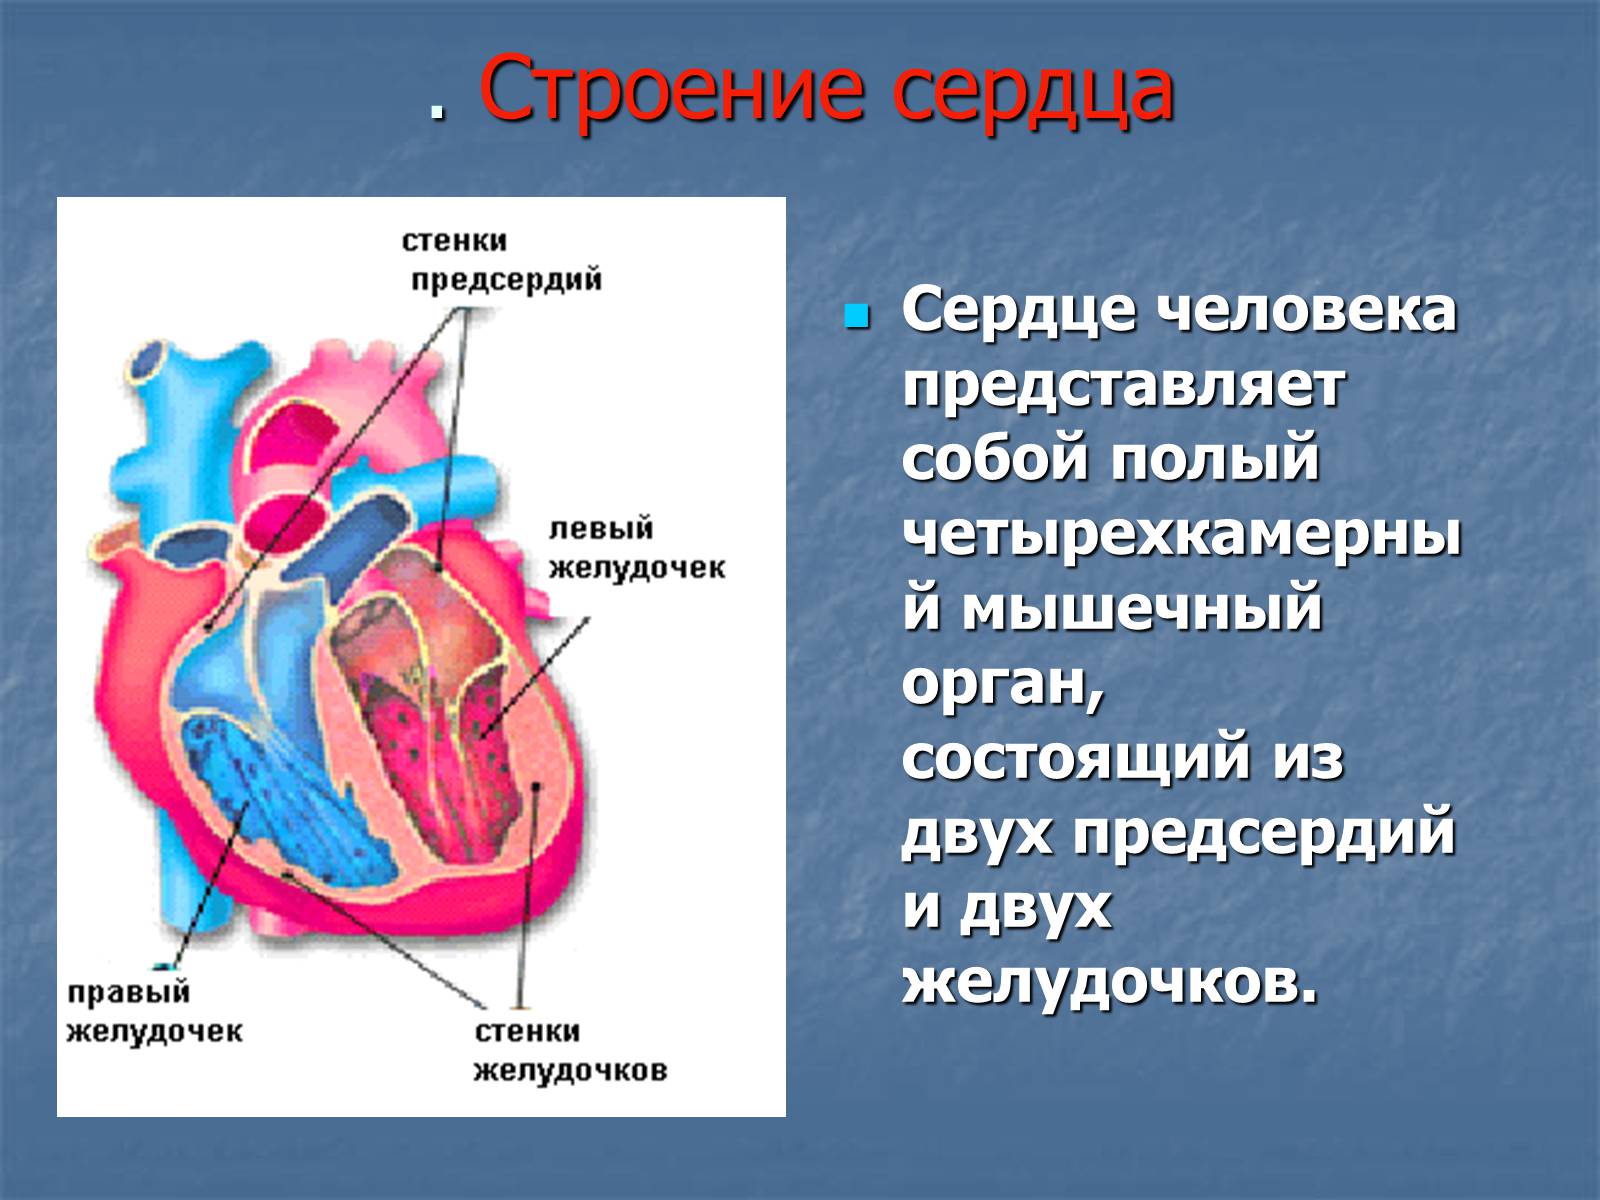 Особенности предсердия. Строение желудочков сердца анатомия. 2 Желудочка и 2 предсердия. Сердце анатомия желудочки и предсердия. Строение сердца человека желудочки и предсердия.